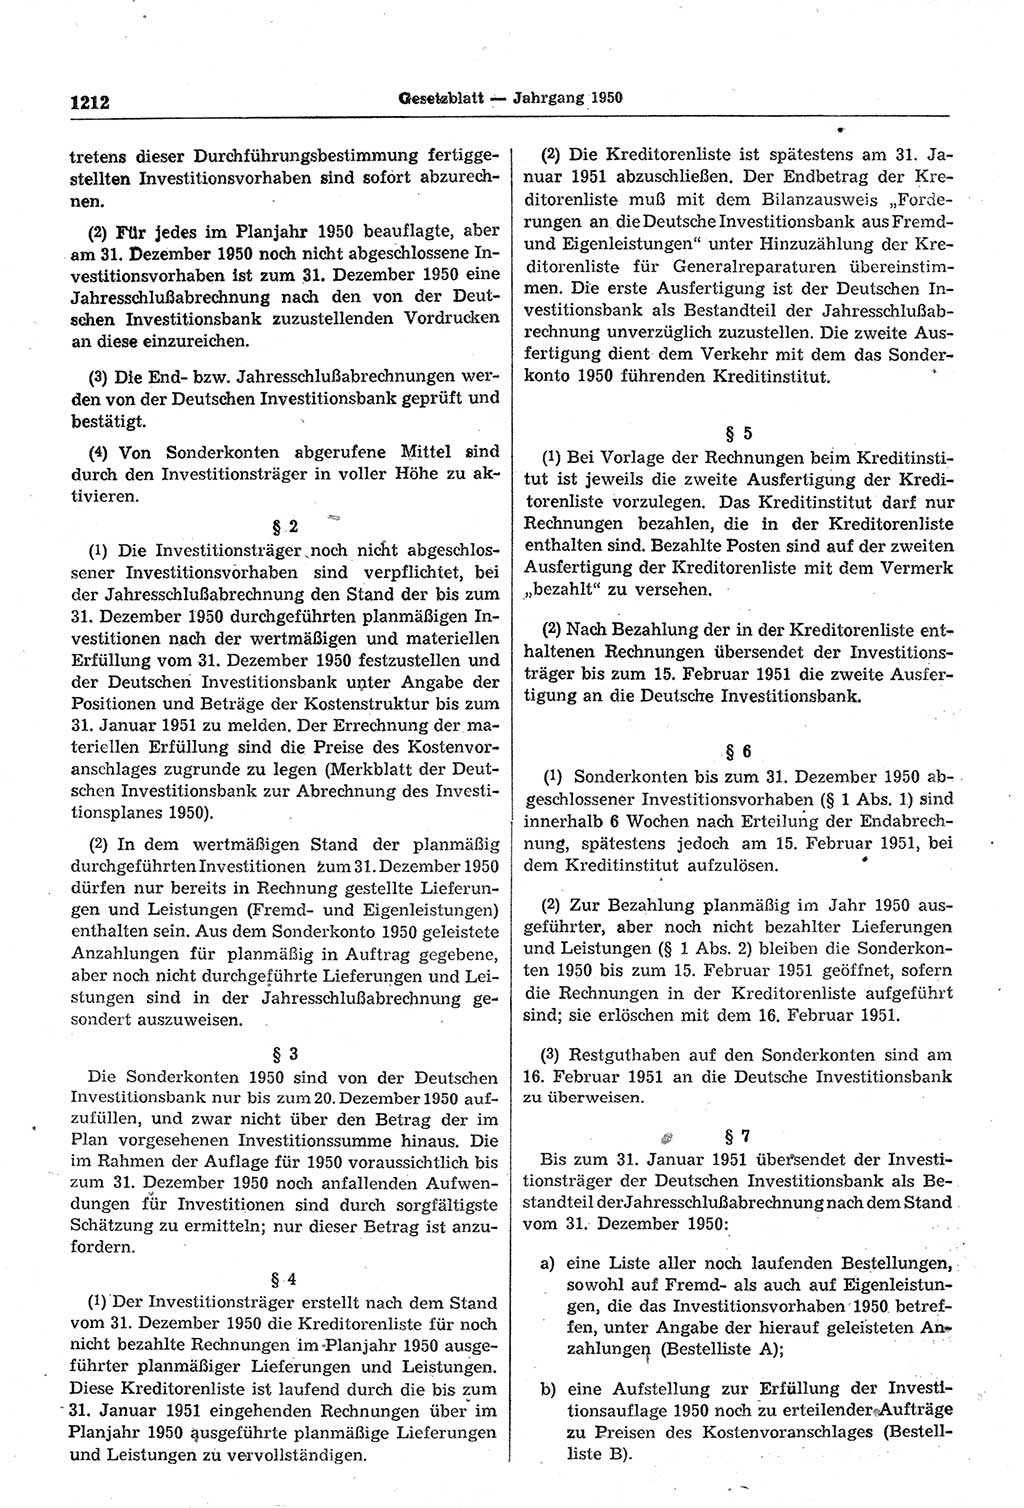 Gesetzblatt (GBl.) der Deutschen Demokratischen Republik (DDR) 1950, Seite 1212 (GBl. DDR 1950, S. 1212)